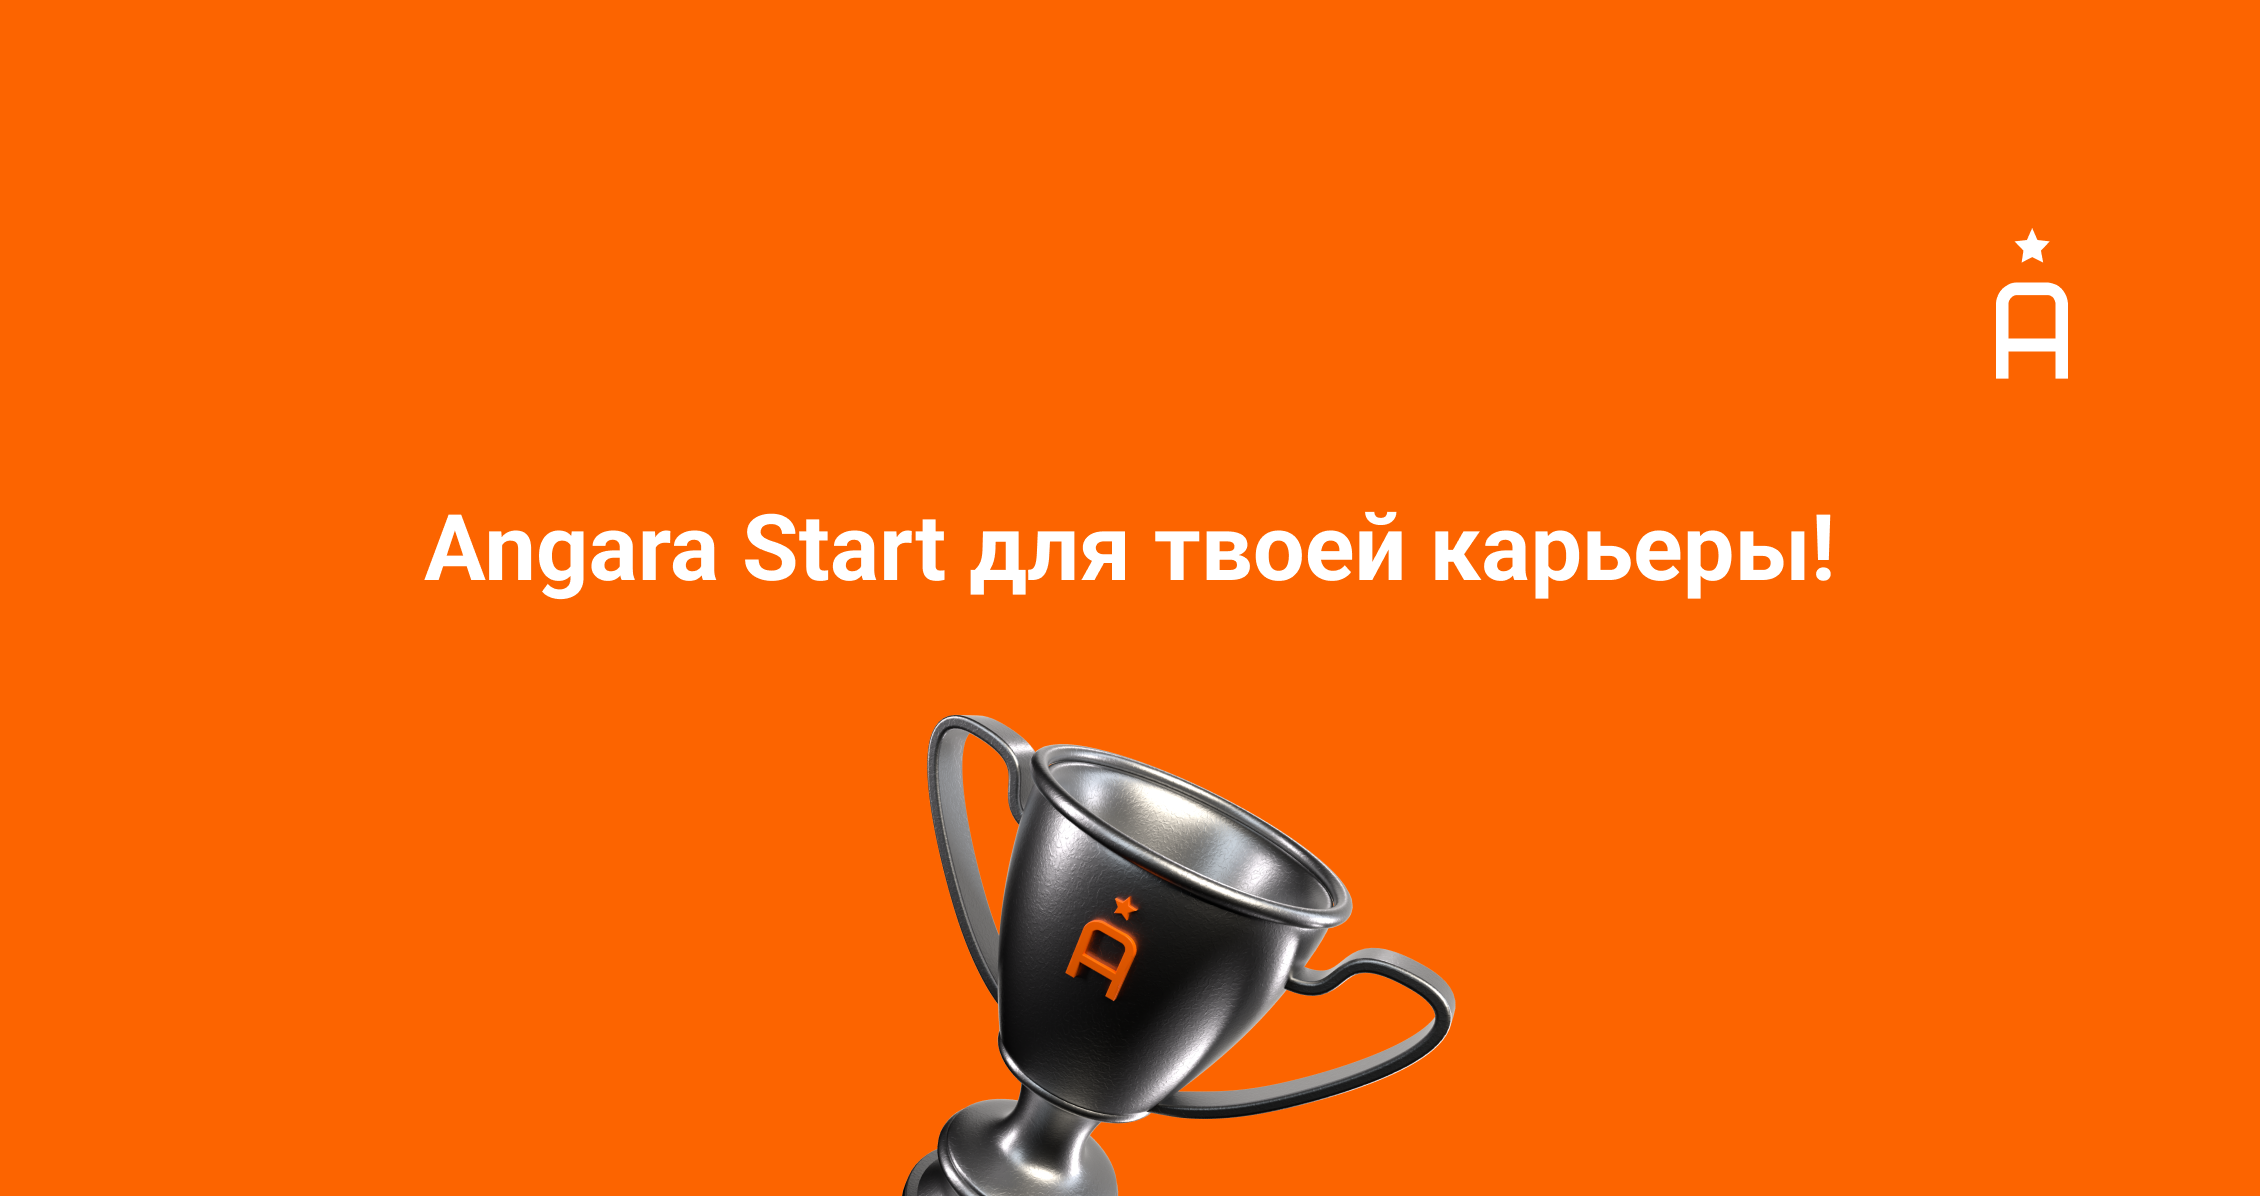 Angara Start — перспективное начало вашей карьеры!